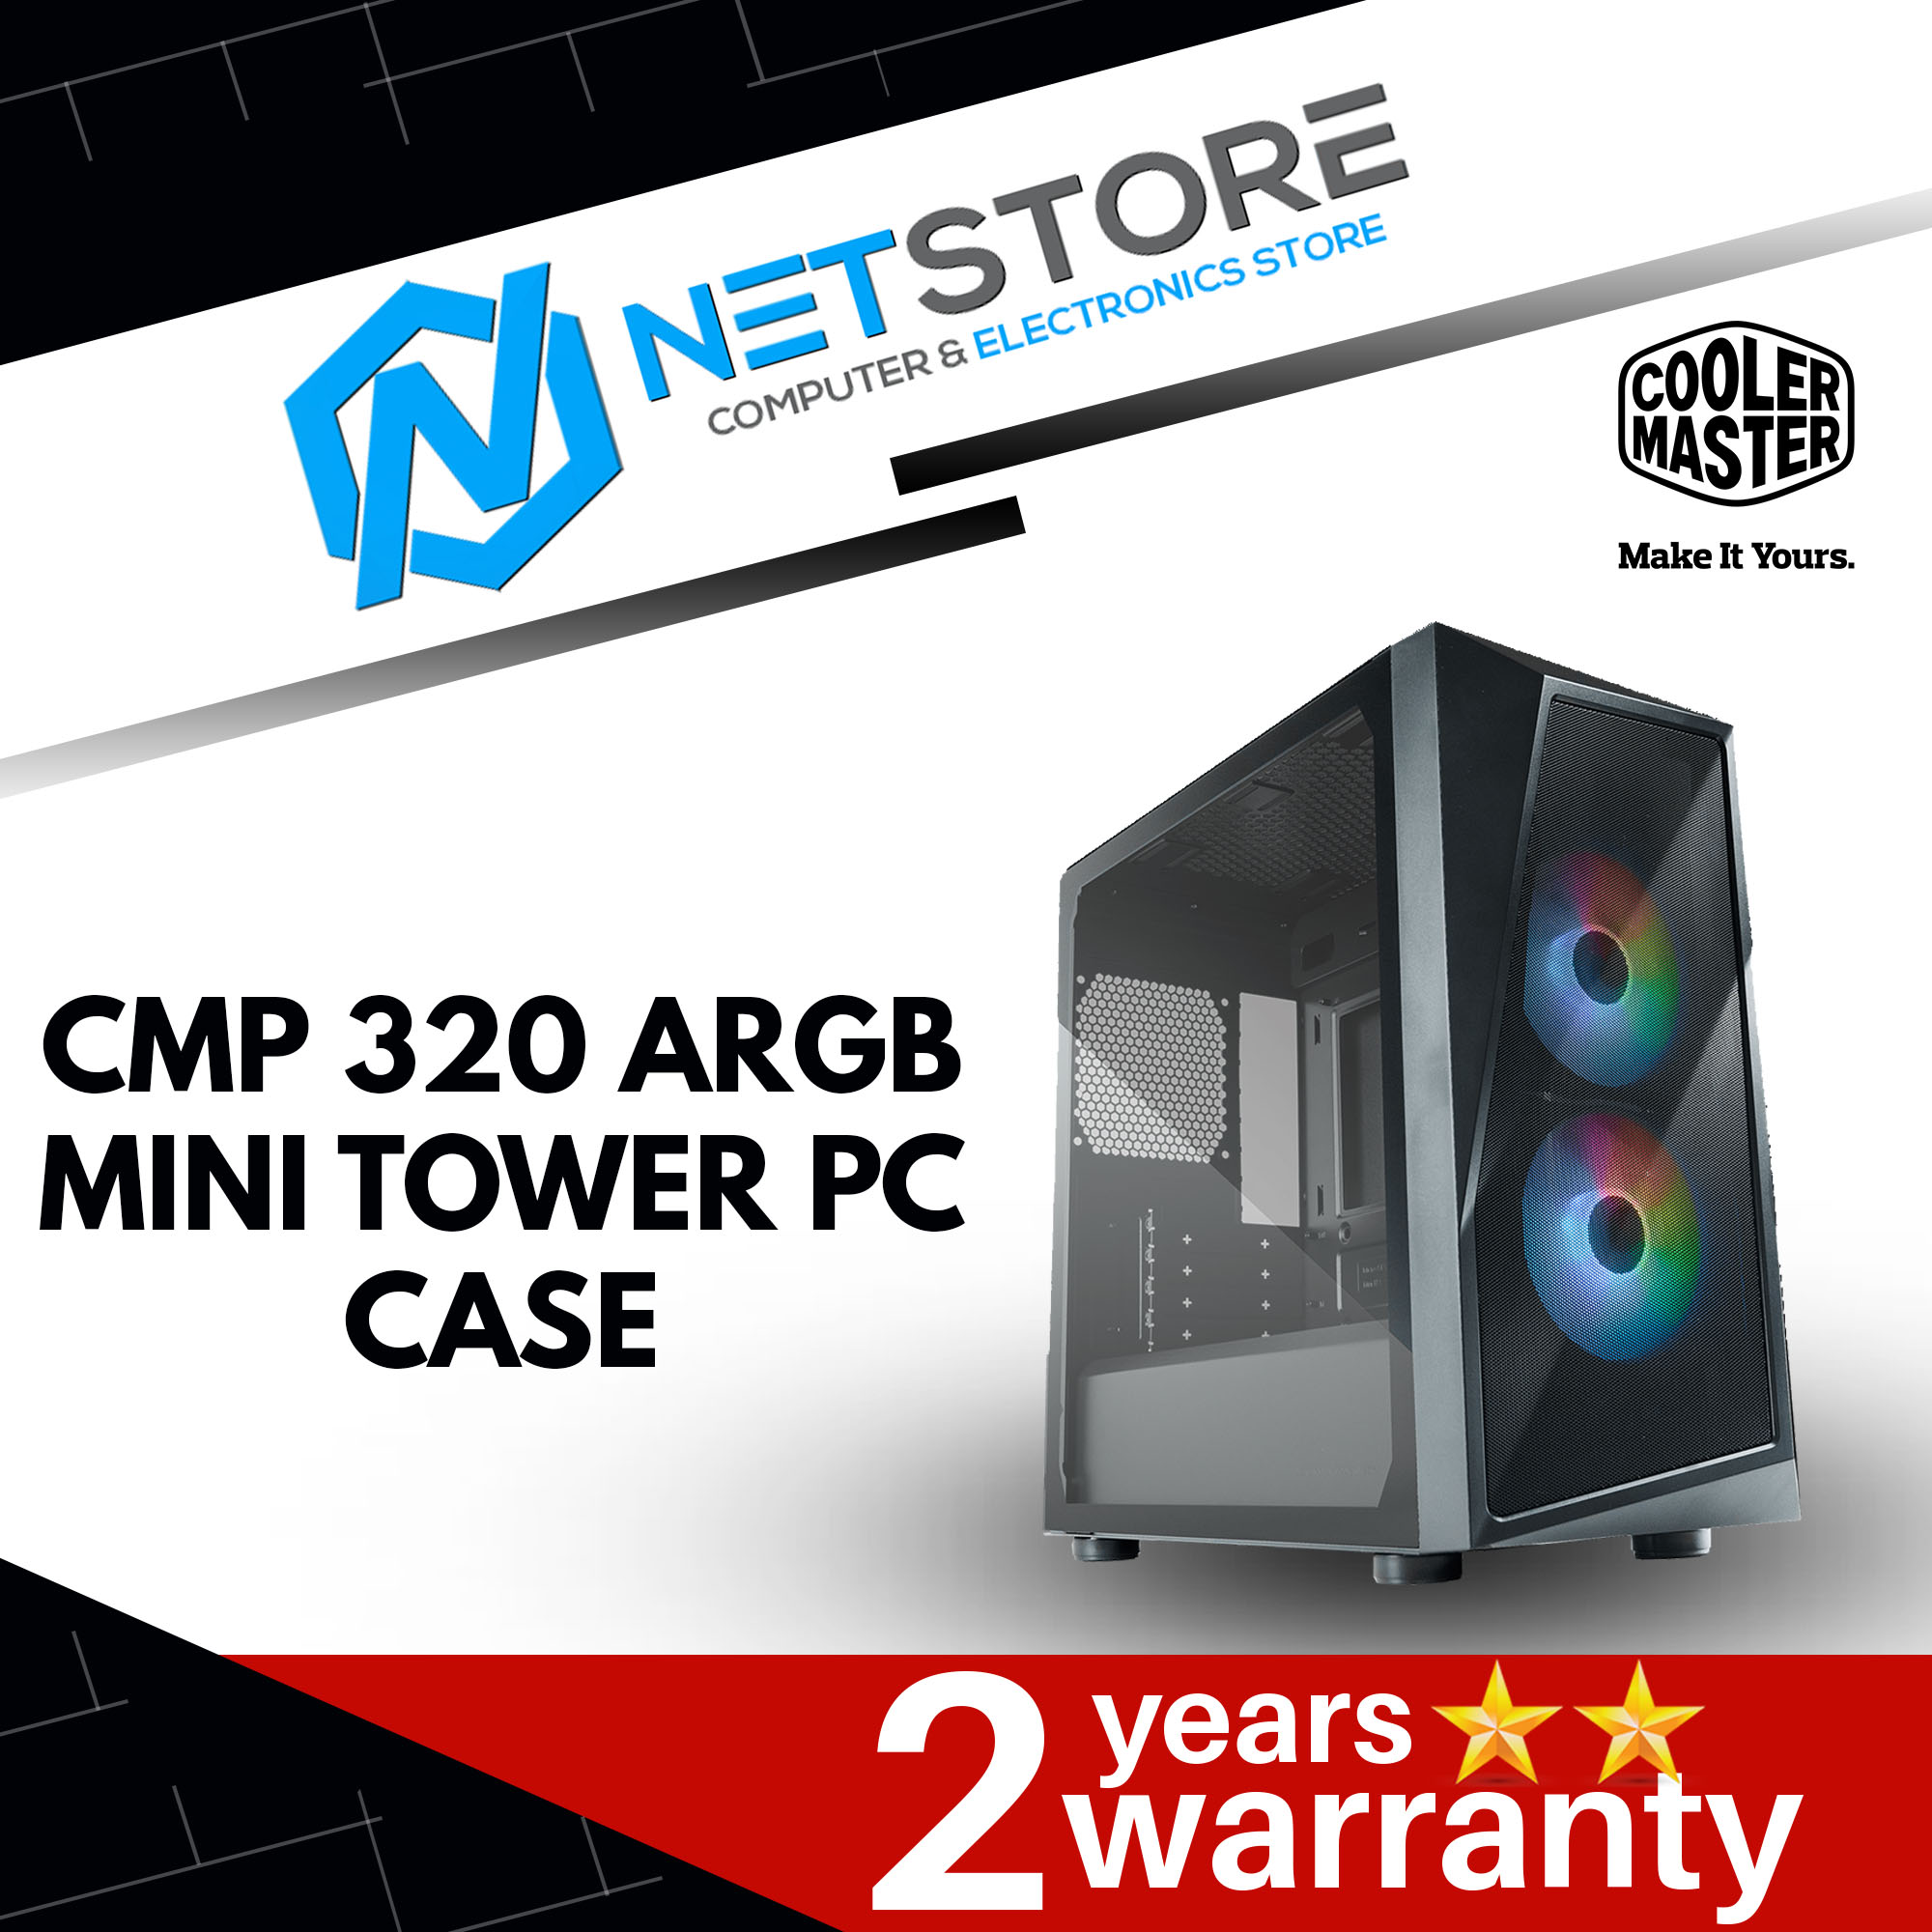 COOLER MASTER CMP 320 ARGB MINI TOWER PC CASE - CP320-KGNN-S00